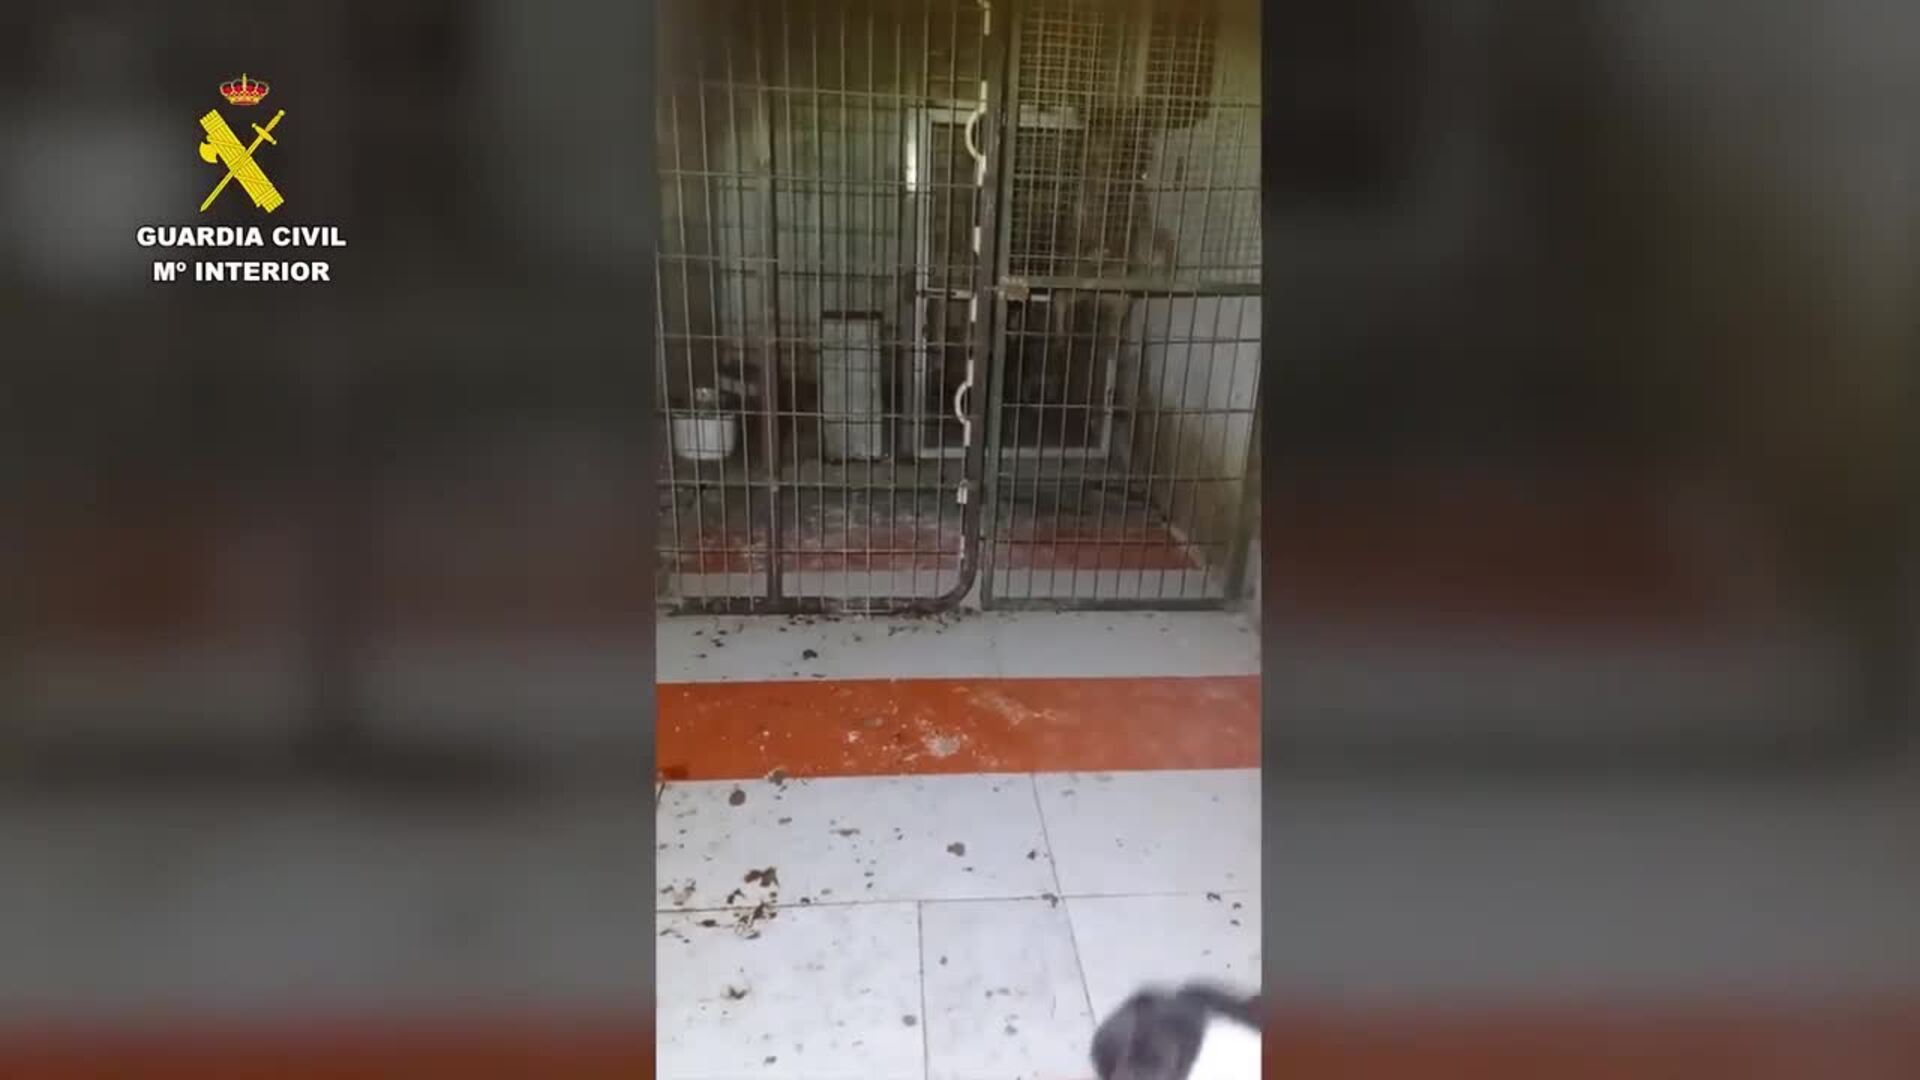 Desmantelados en Alhaurín el Grande (Málaga) dos criaderos ilegales de perros